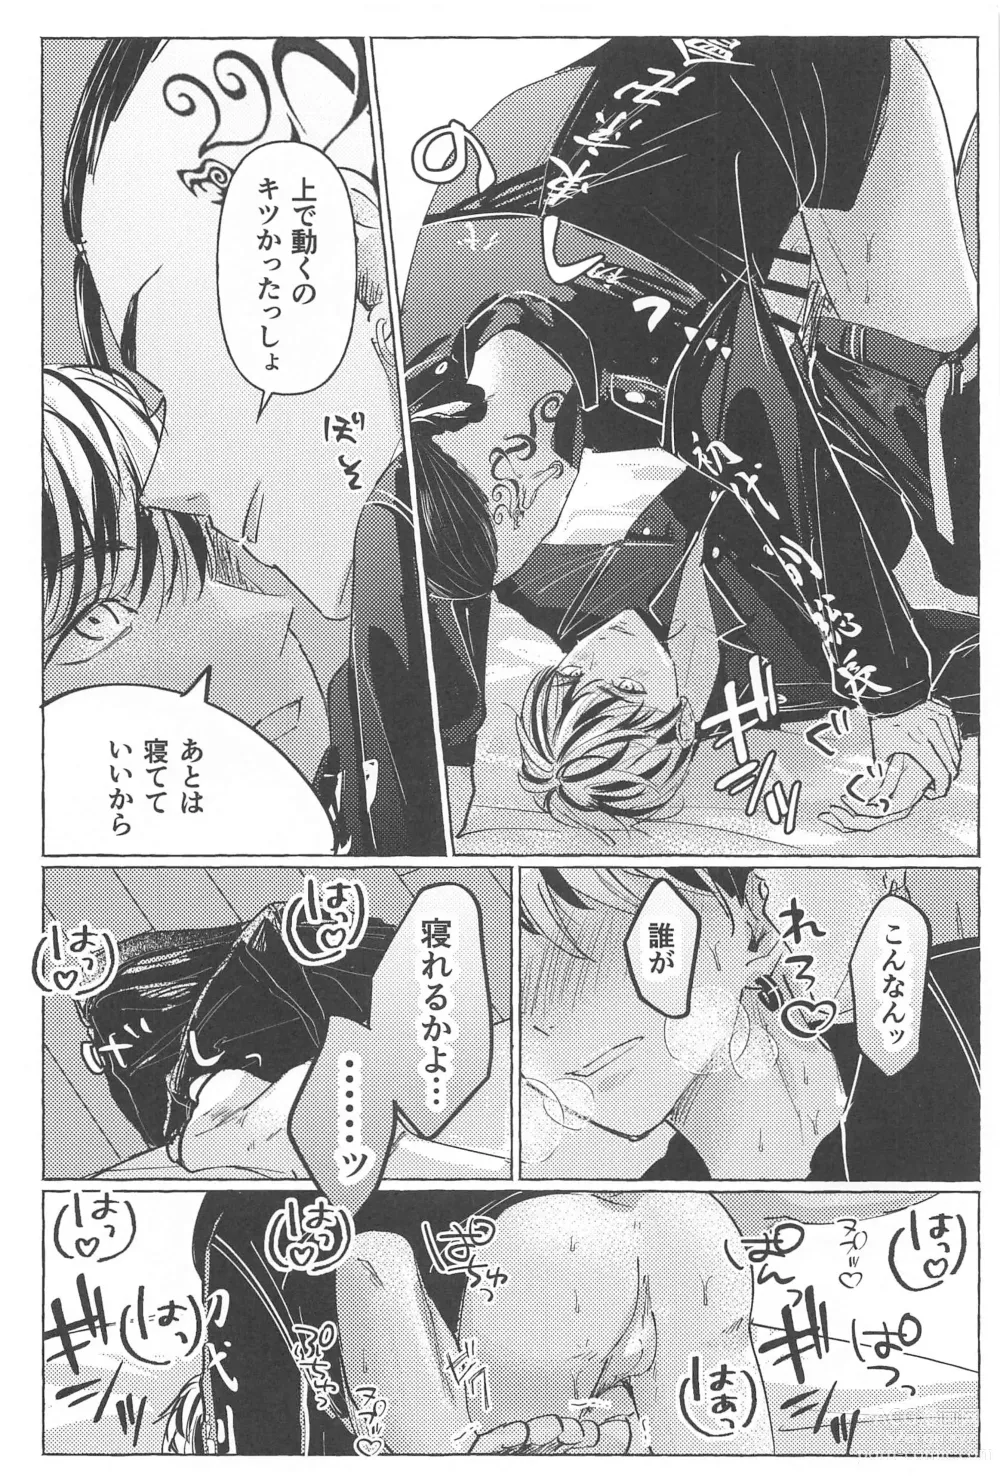 Page 17 of doujinshi 27-sai no Tokkoufuku